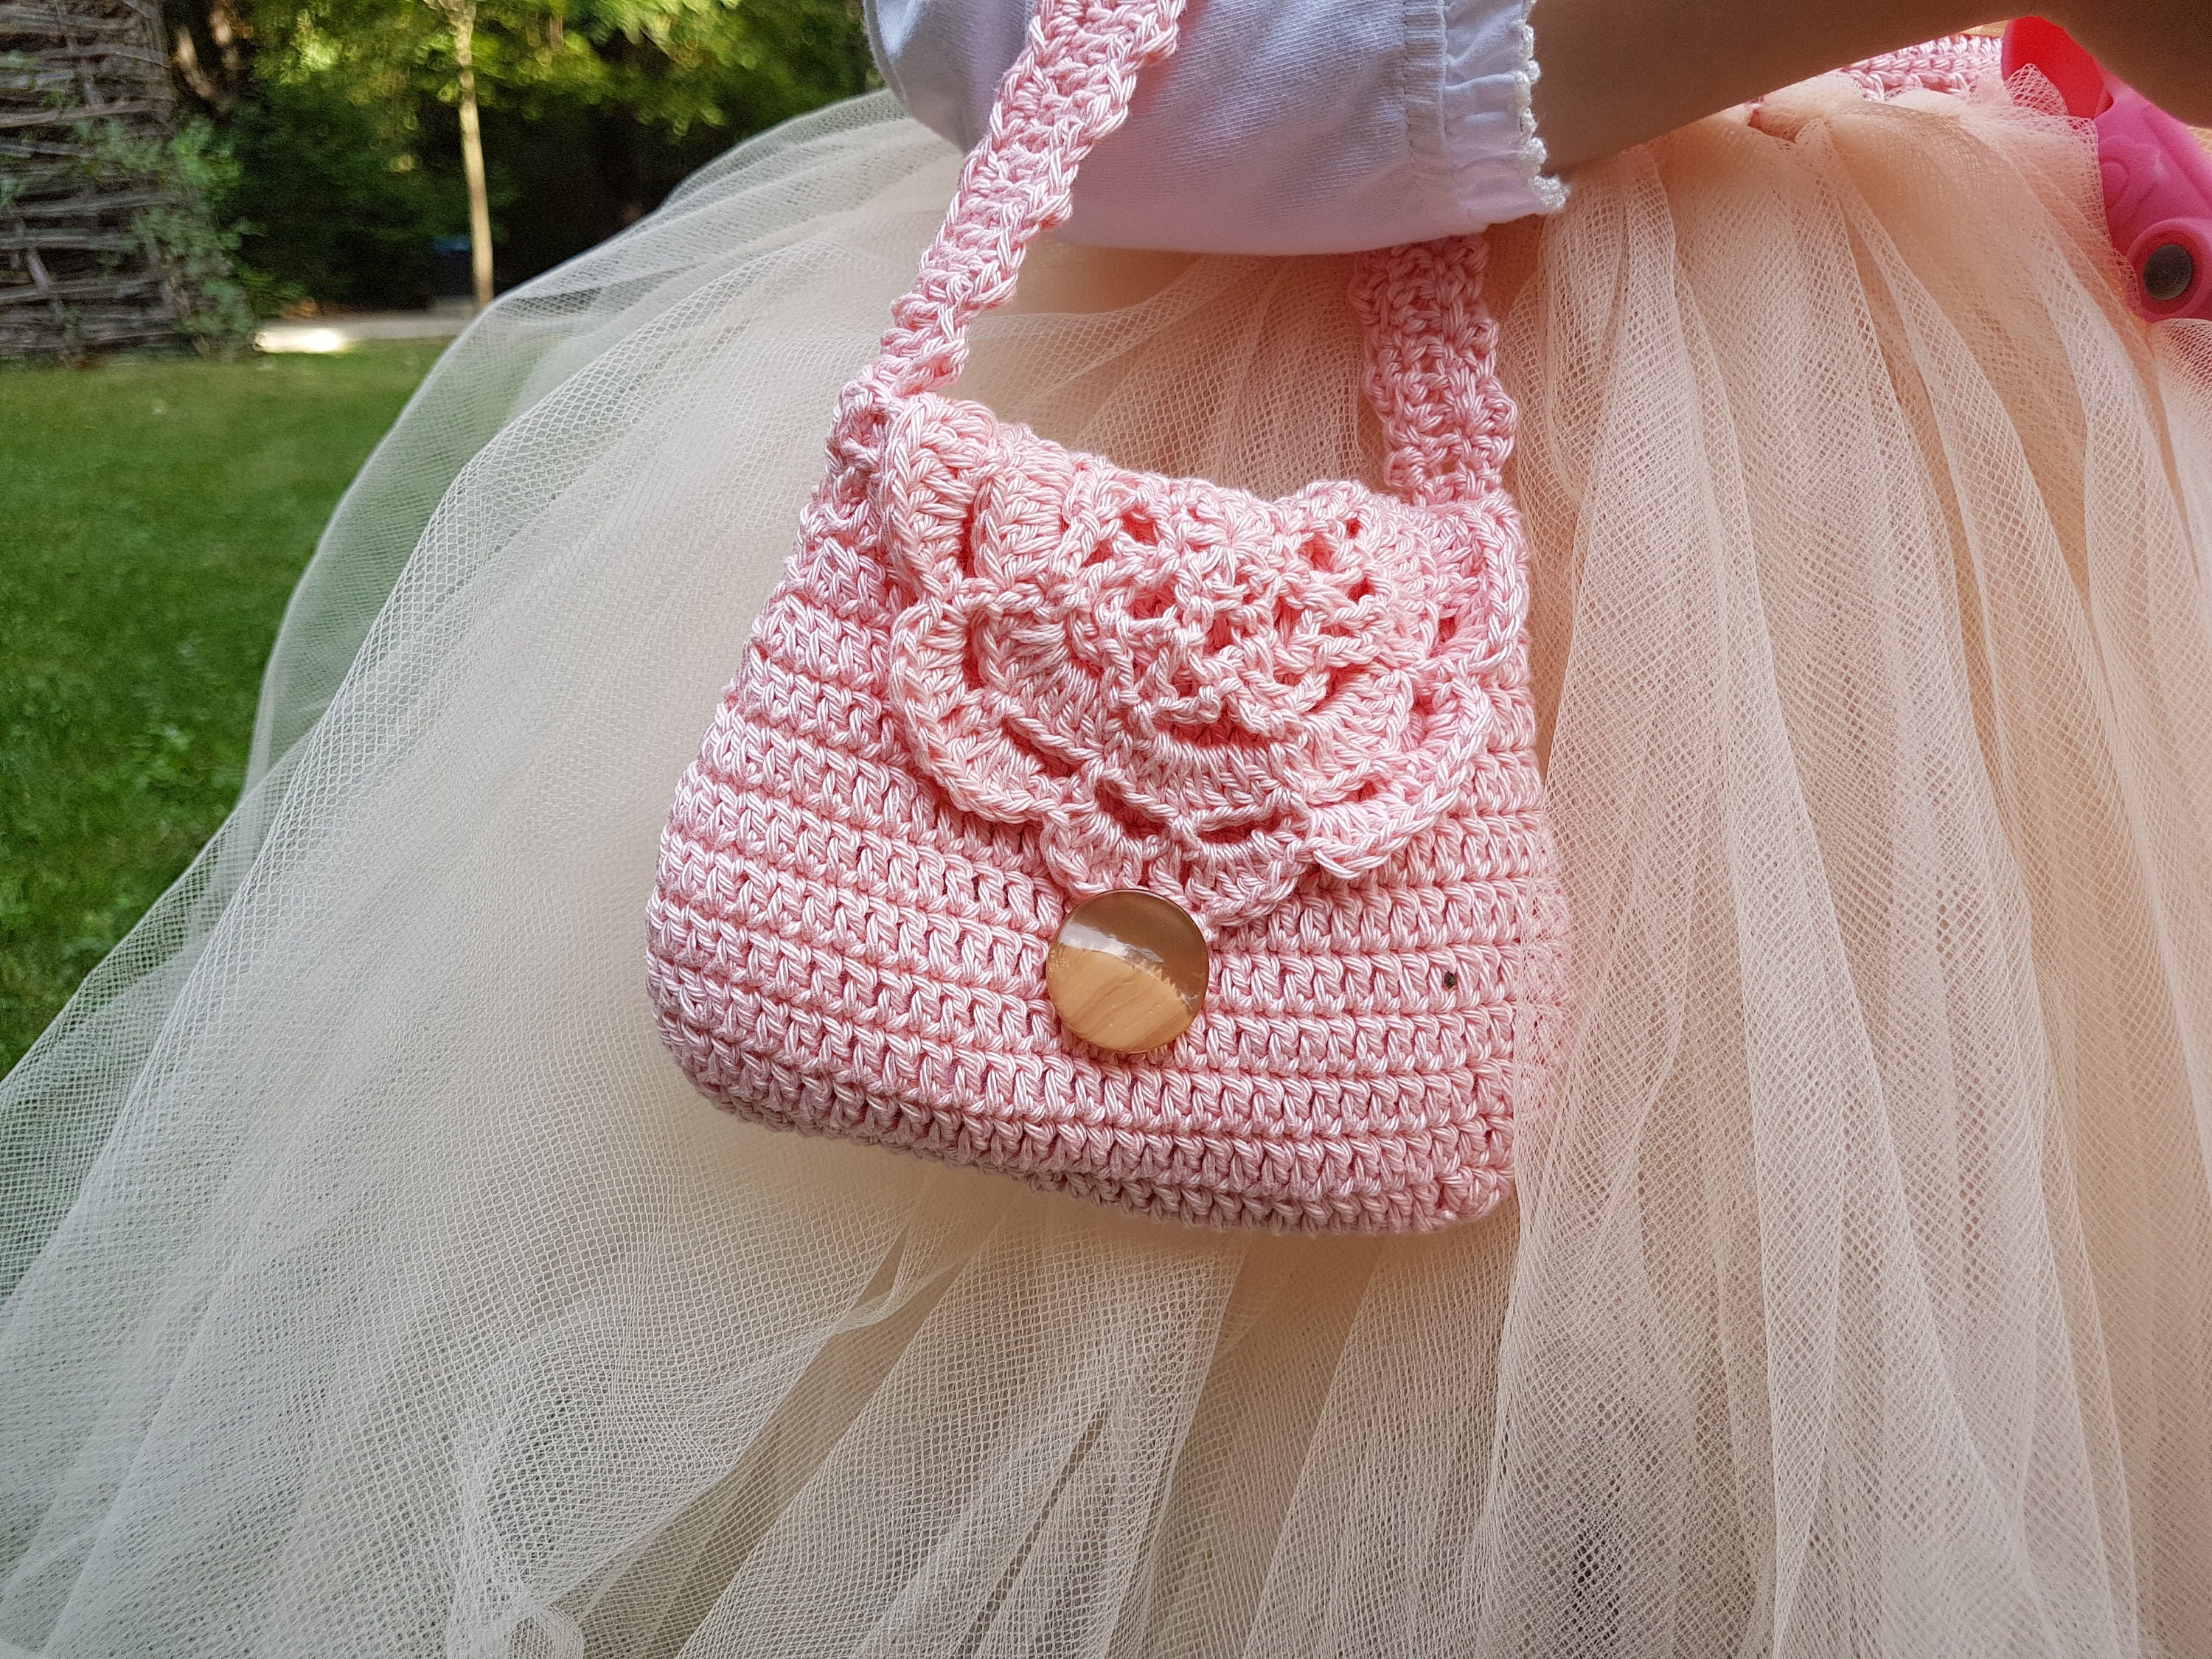 30 Cute Crochet Purses For Kids | Crochet projects, Crochet handbags  patterns, Crochet purse patterns